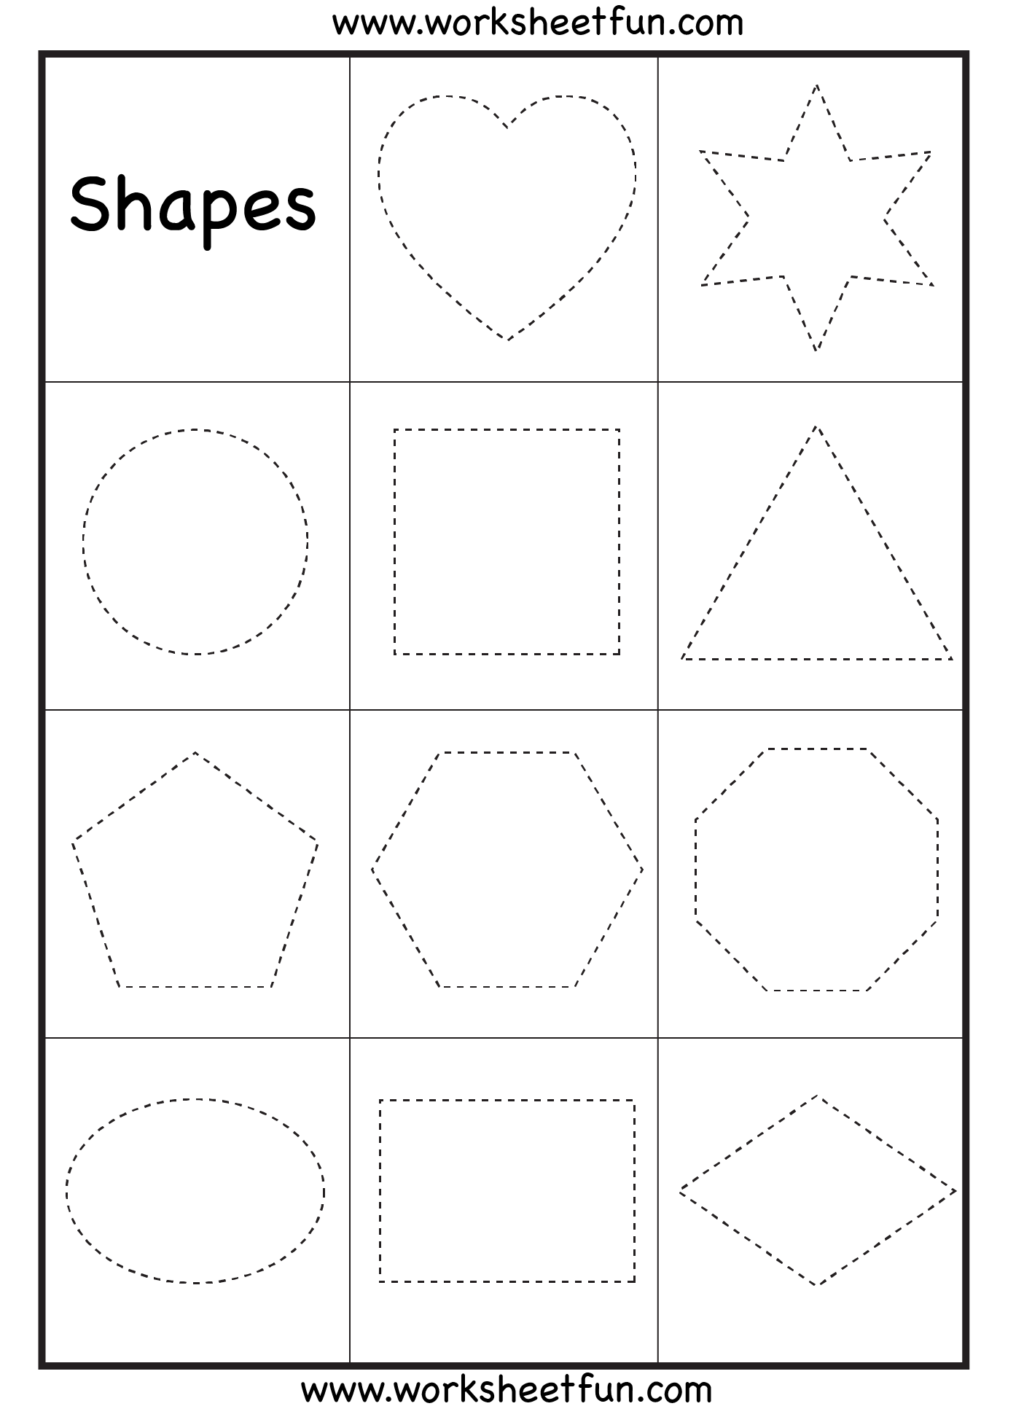 Worksheet ~ Kindergartening Worksheets Worksheet Preschool